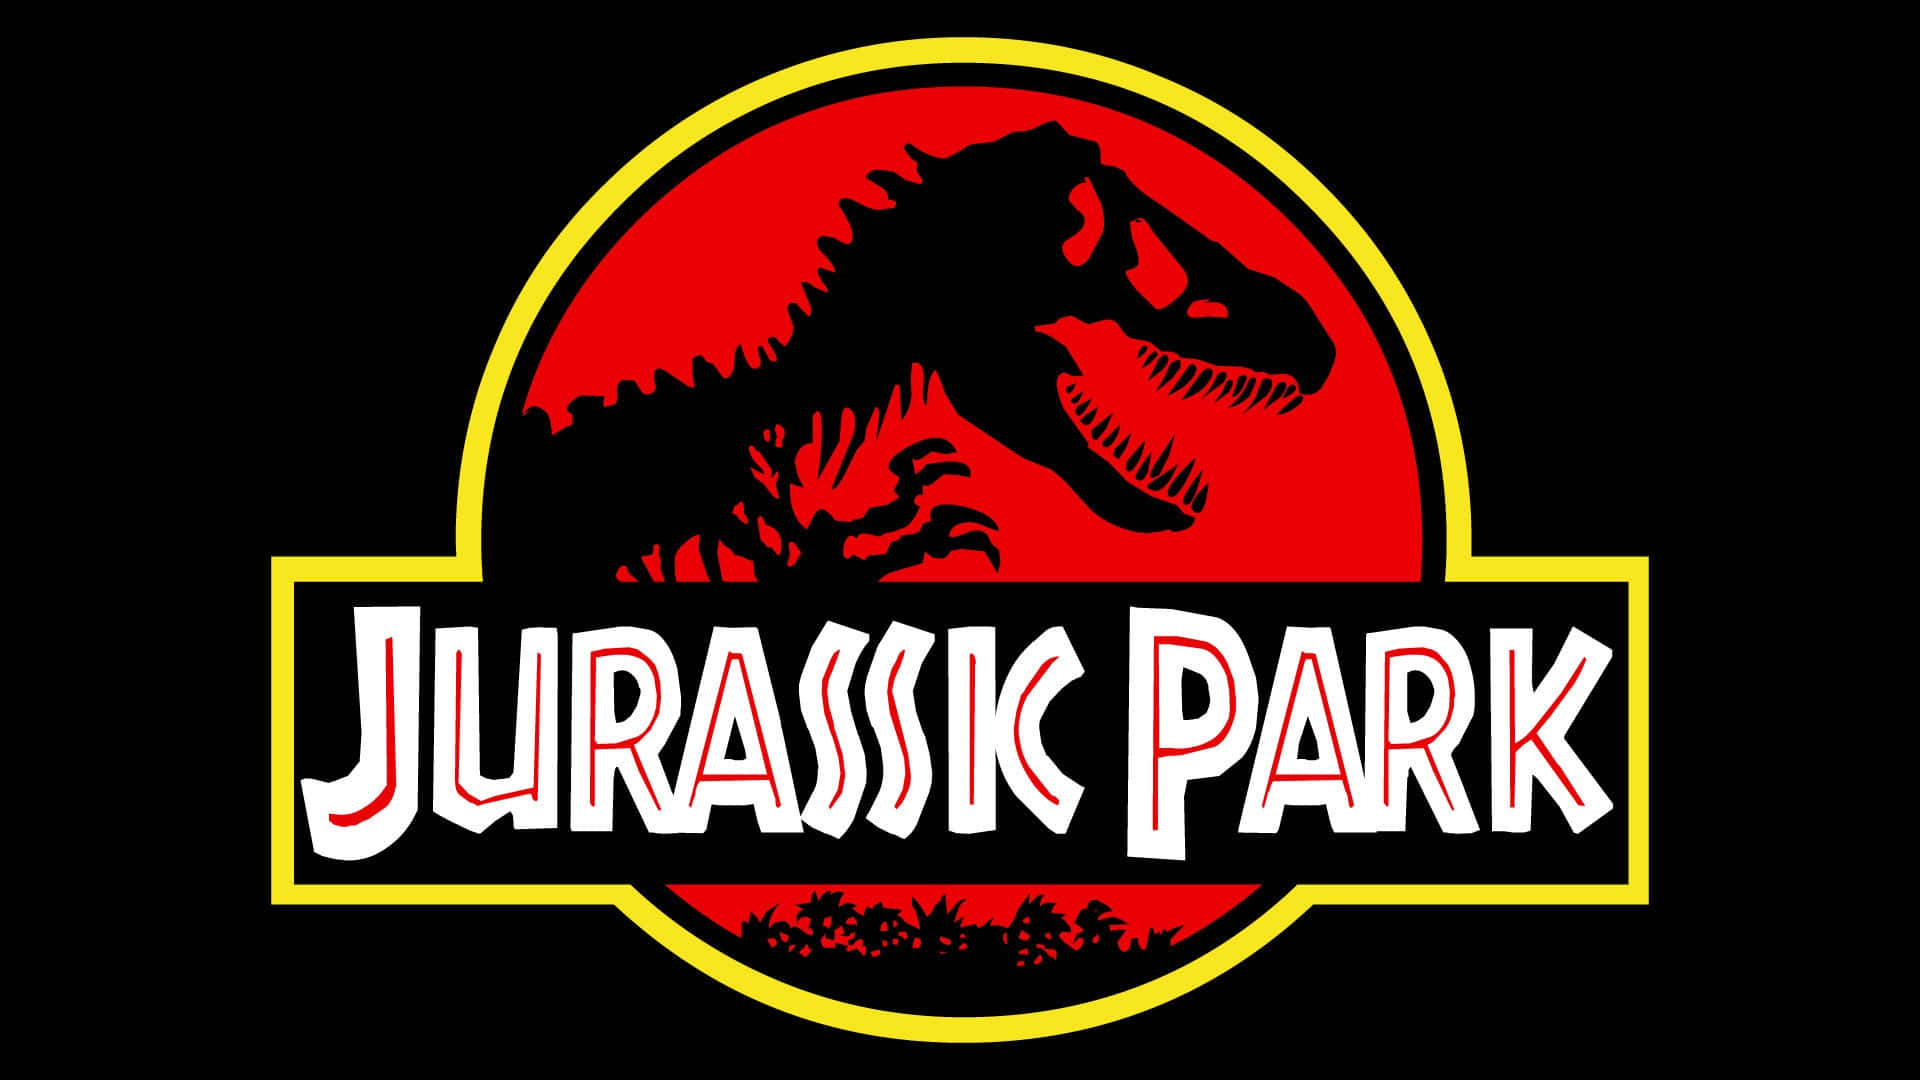 Jurassicpark-upplevelsen Omgestaltad I Ett Fantastiskt Landskap.